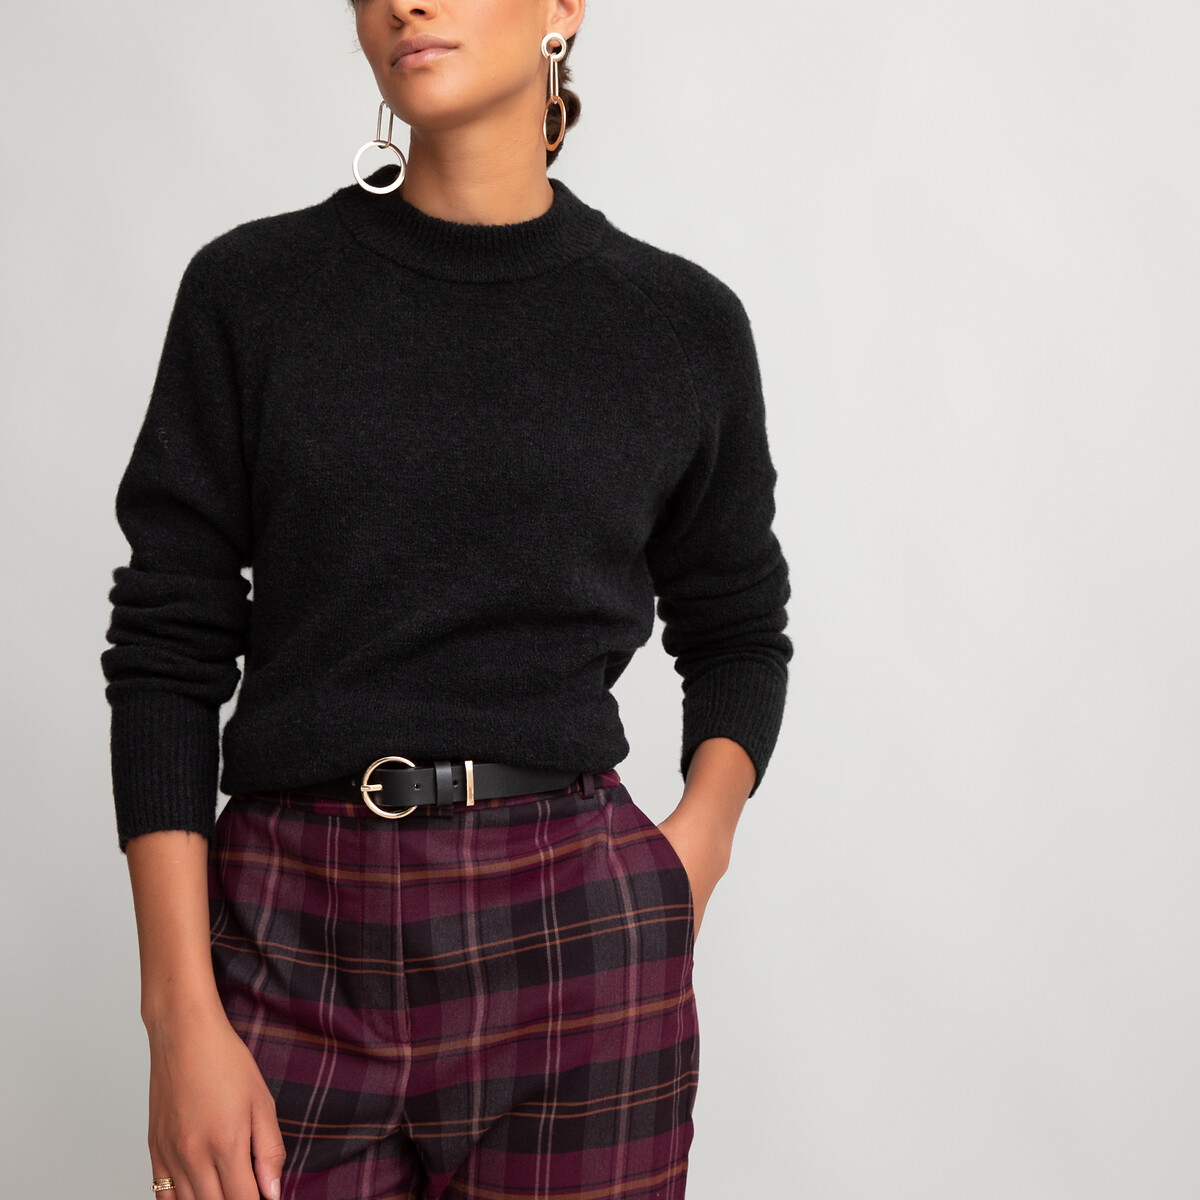 Пуловер La Redoute С круглым вырезом из плотного трикотажа S черный, размер S - фото 3